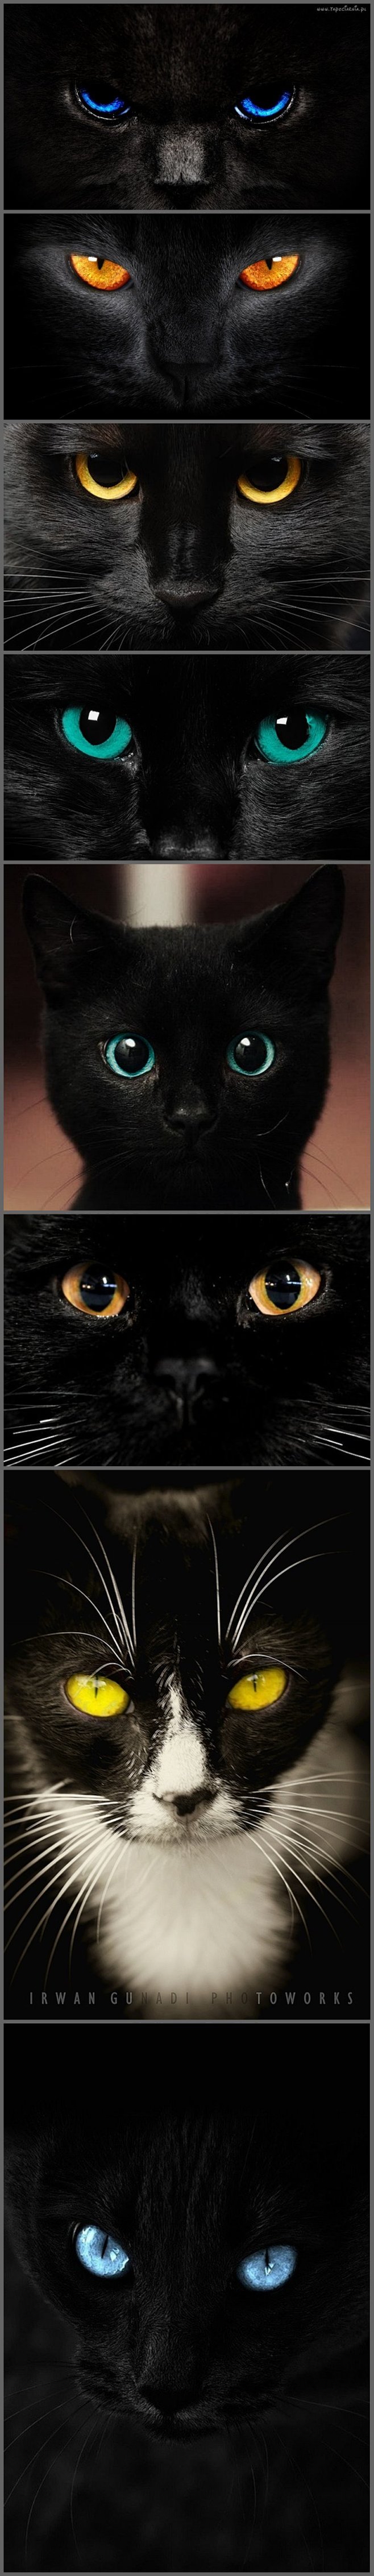 #宝石# 视觉  黑猫之眼